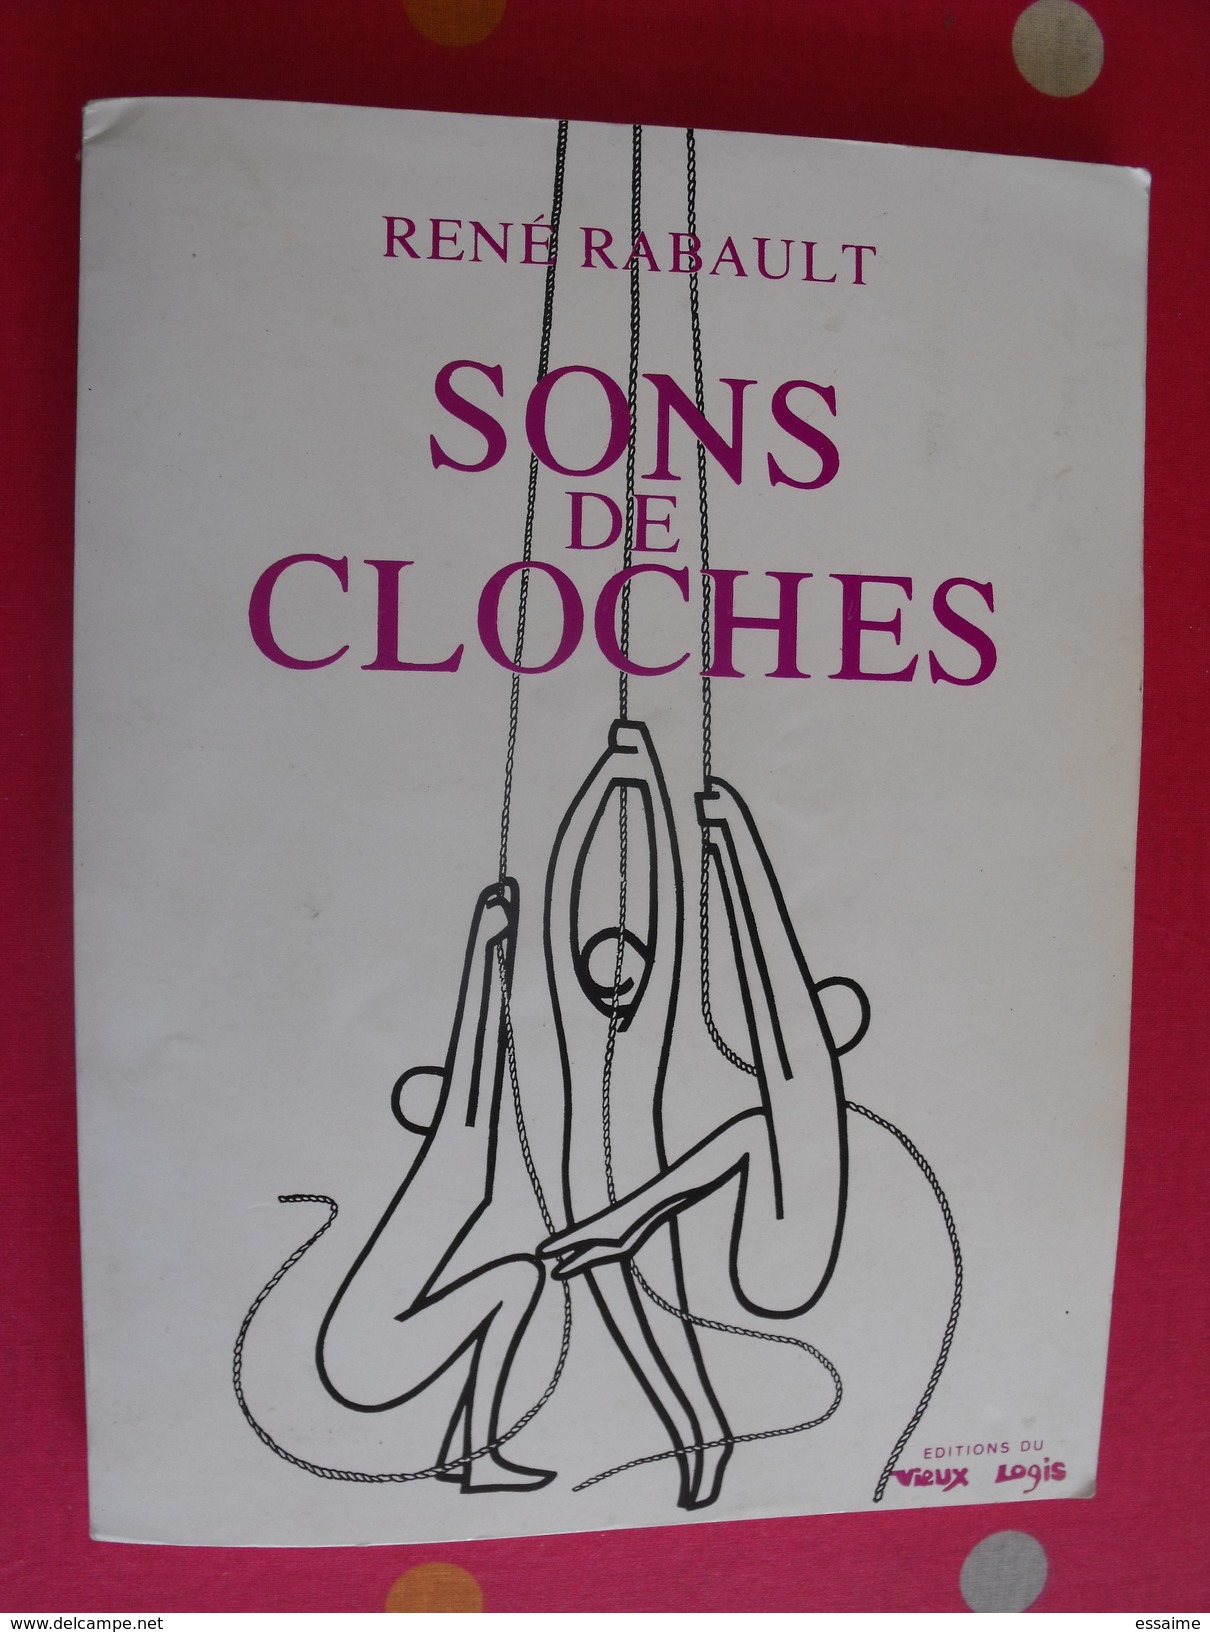 Sons De Cloches. René Rabault. Récits. Anjou Angers. 1976 éditions Du Vieux Logis - Pays De Loire